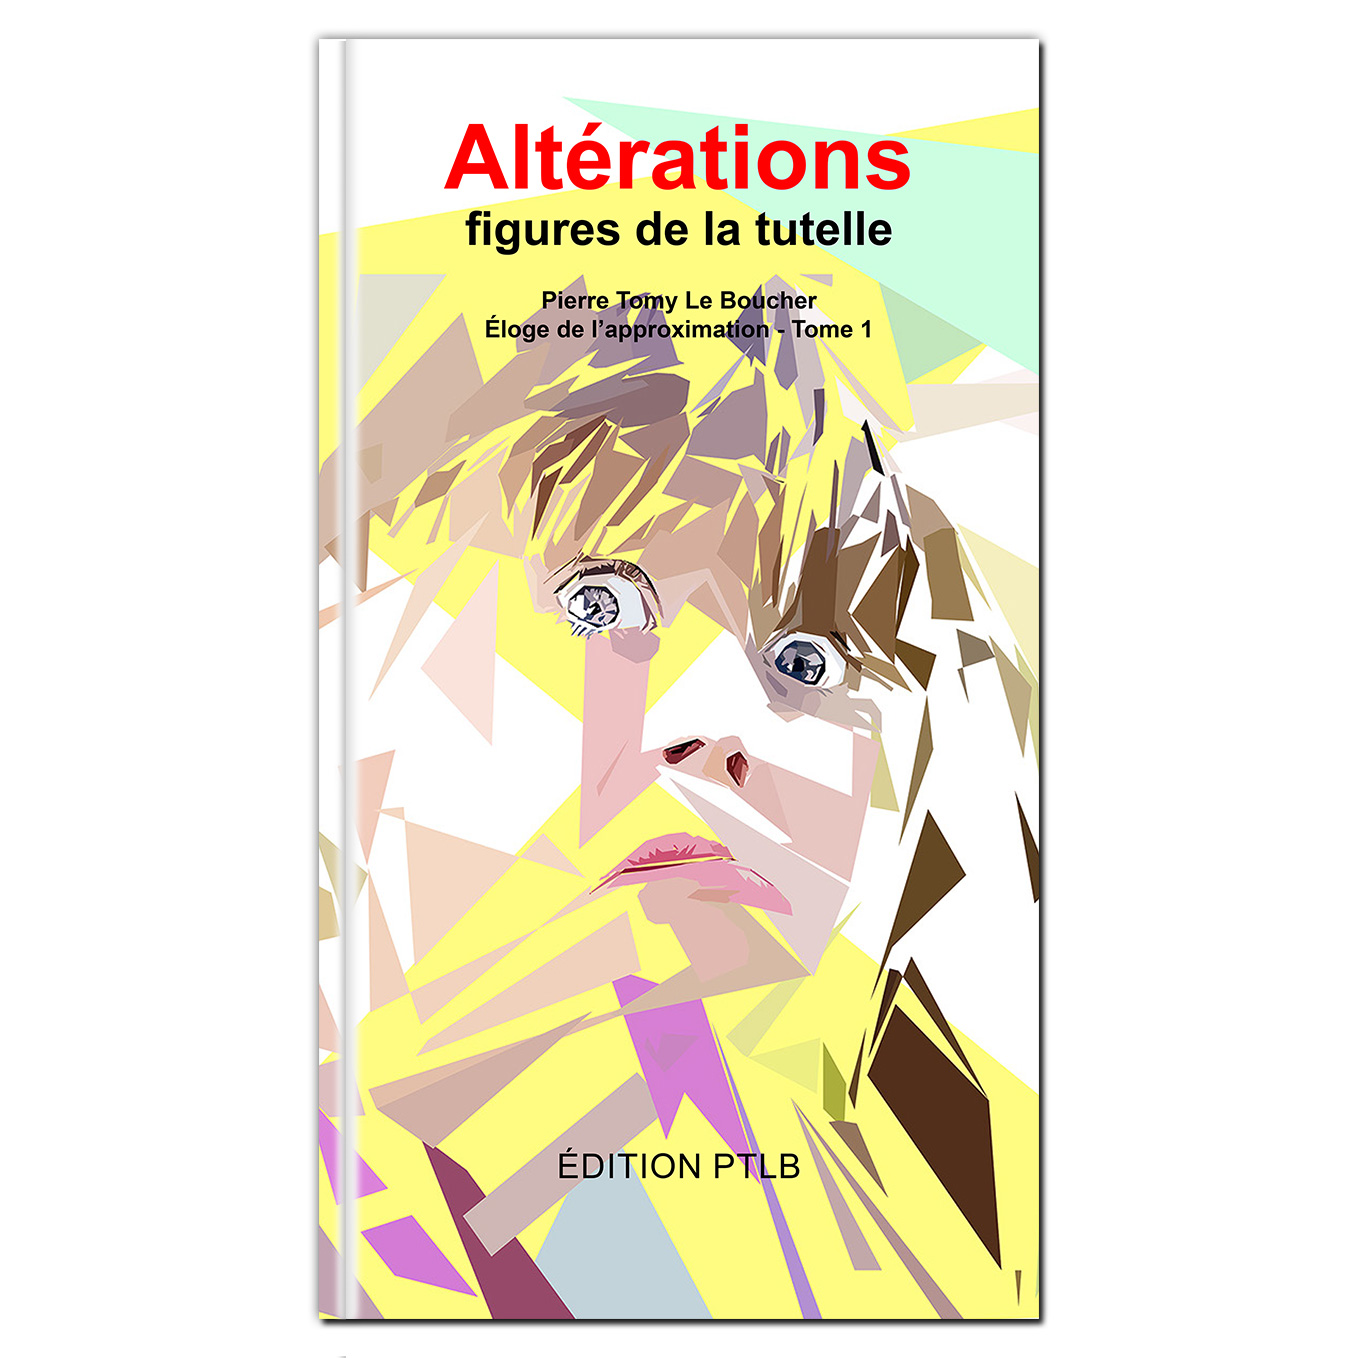 Ebook - Altérations - figures de la tutelle par Pierre Tomy Le Boucher